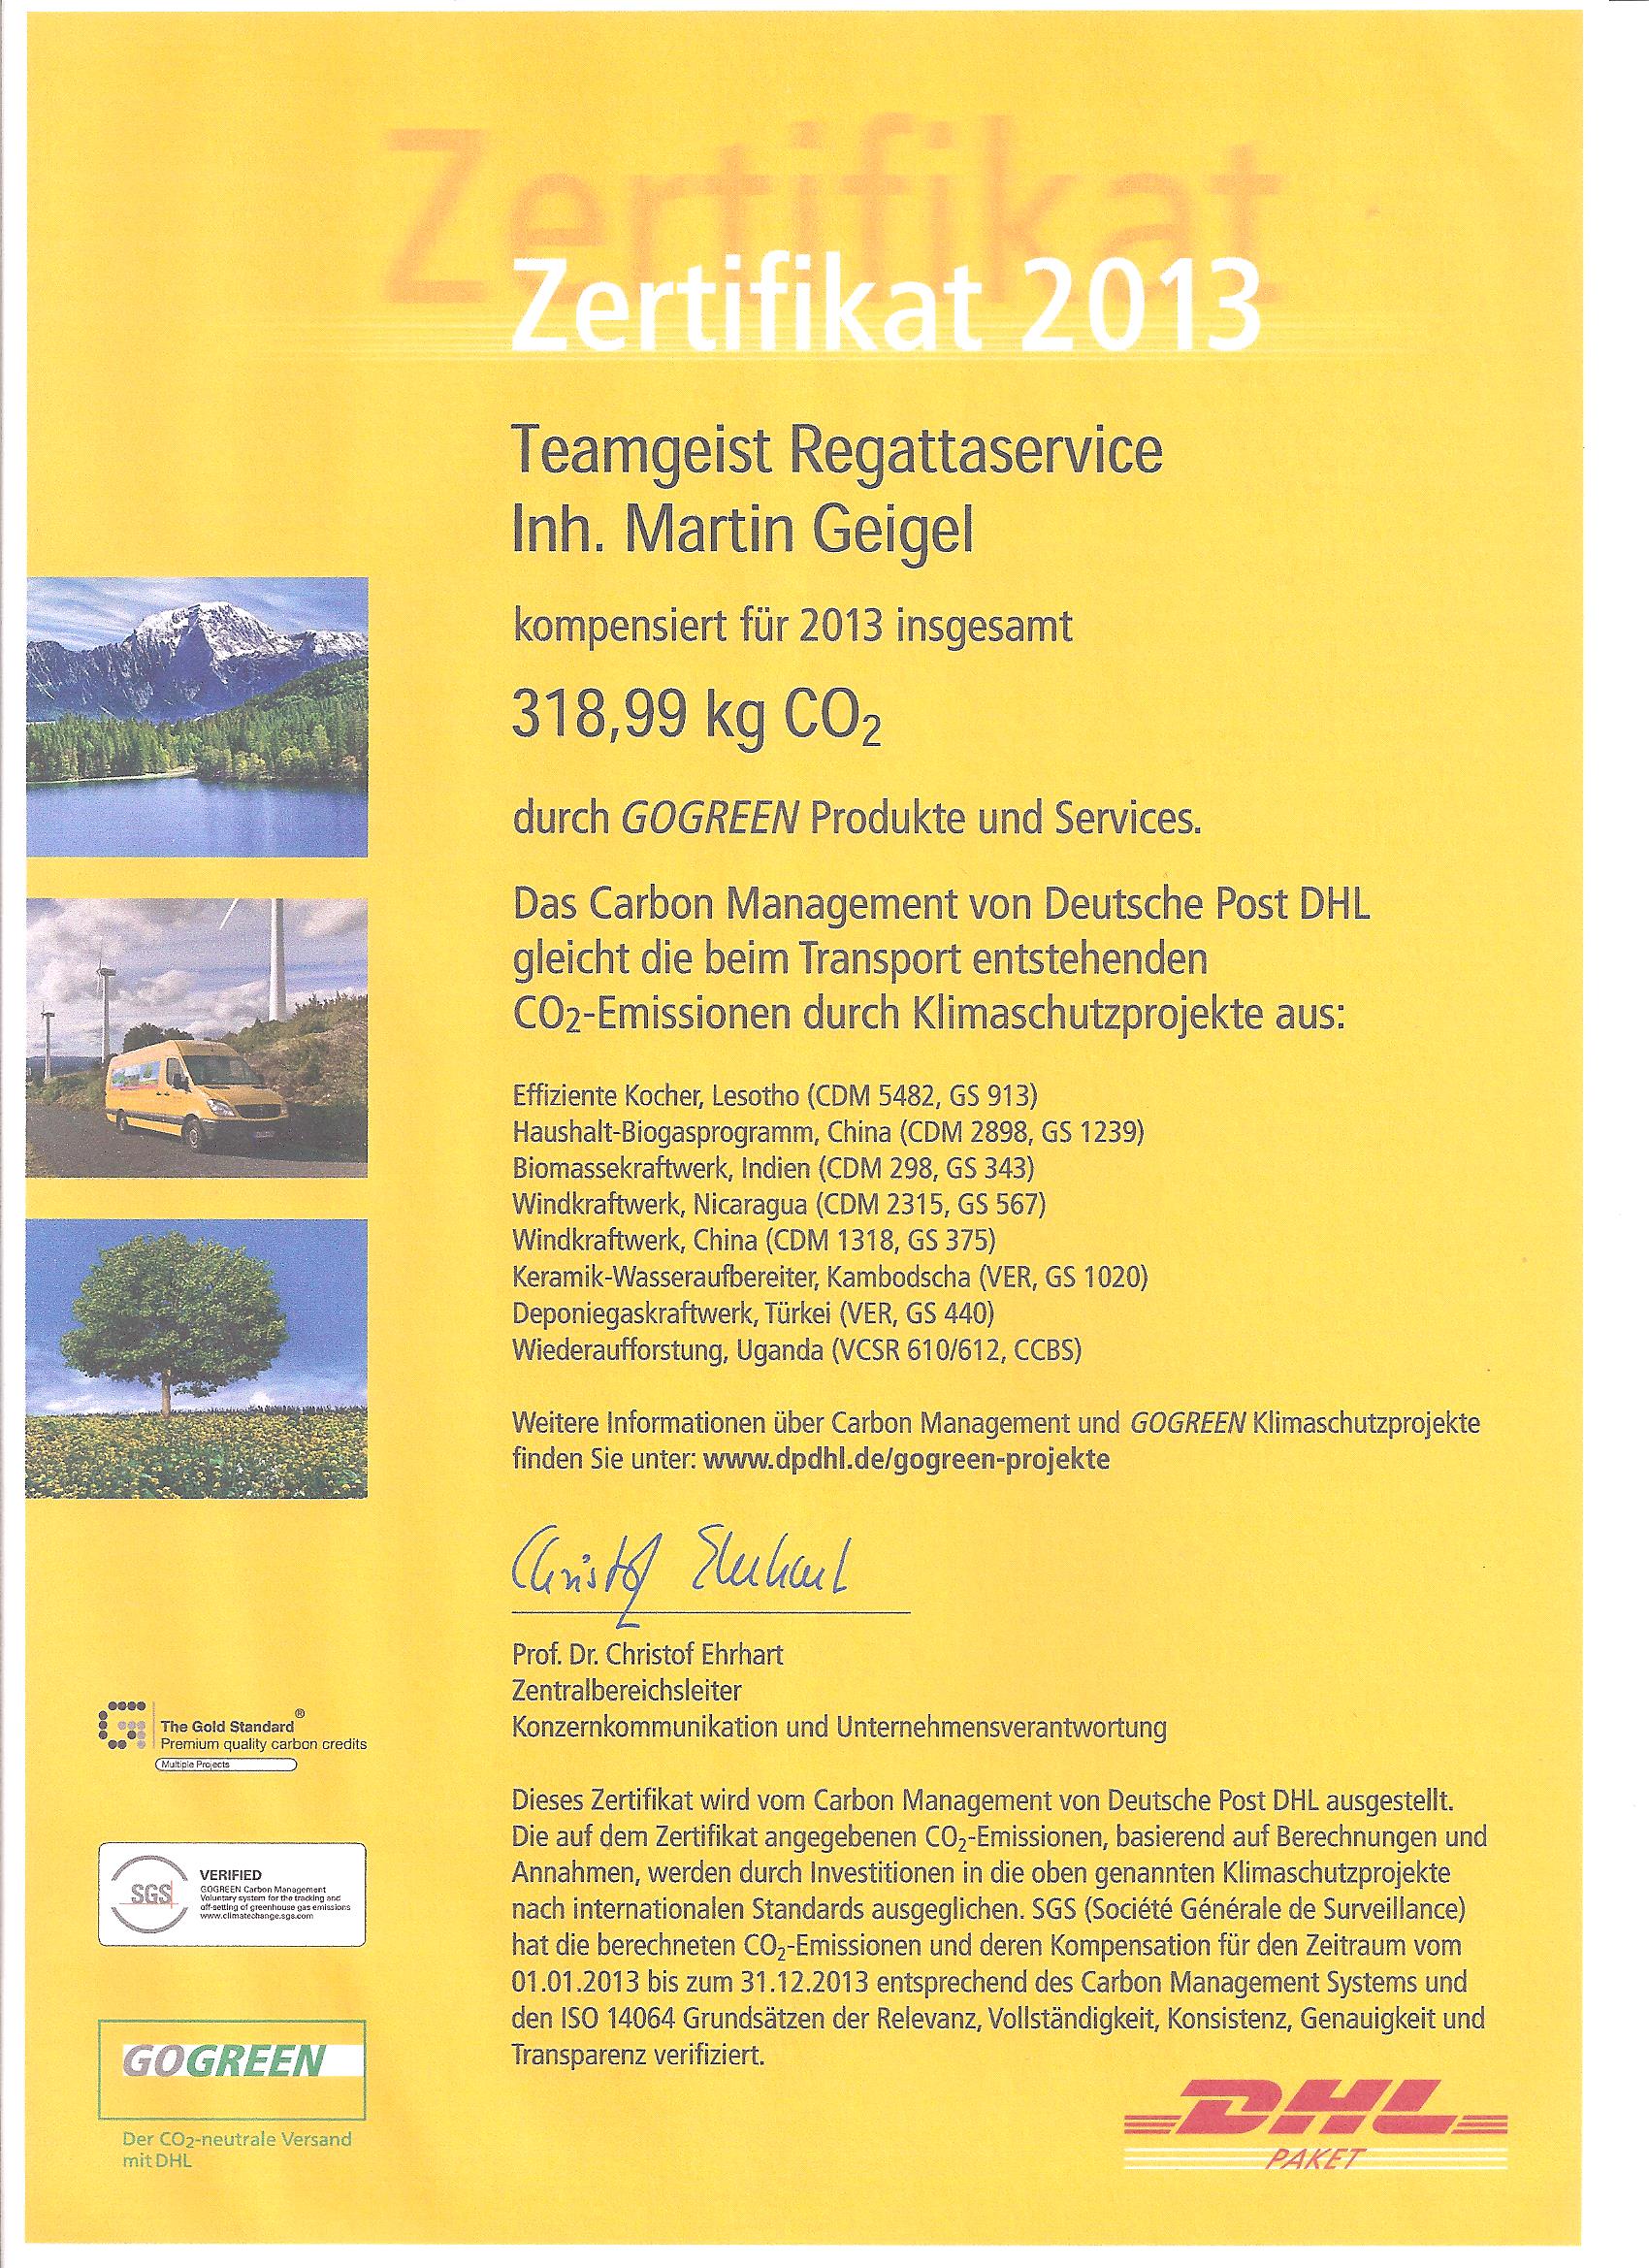 DHL Zertifikat 2013